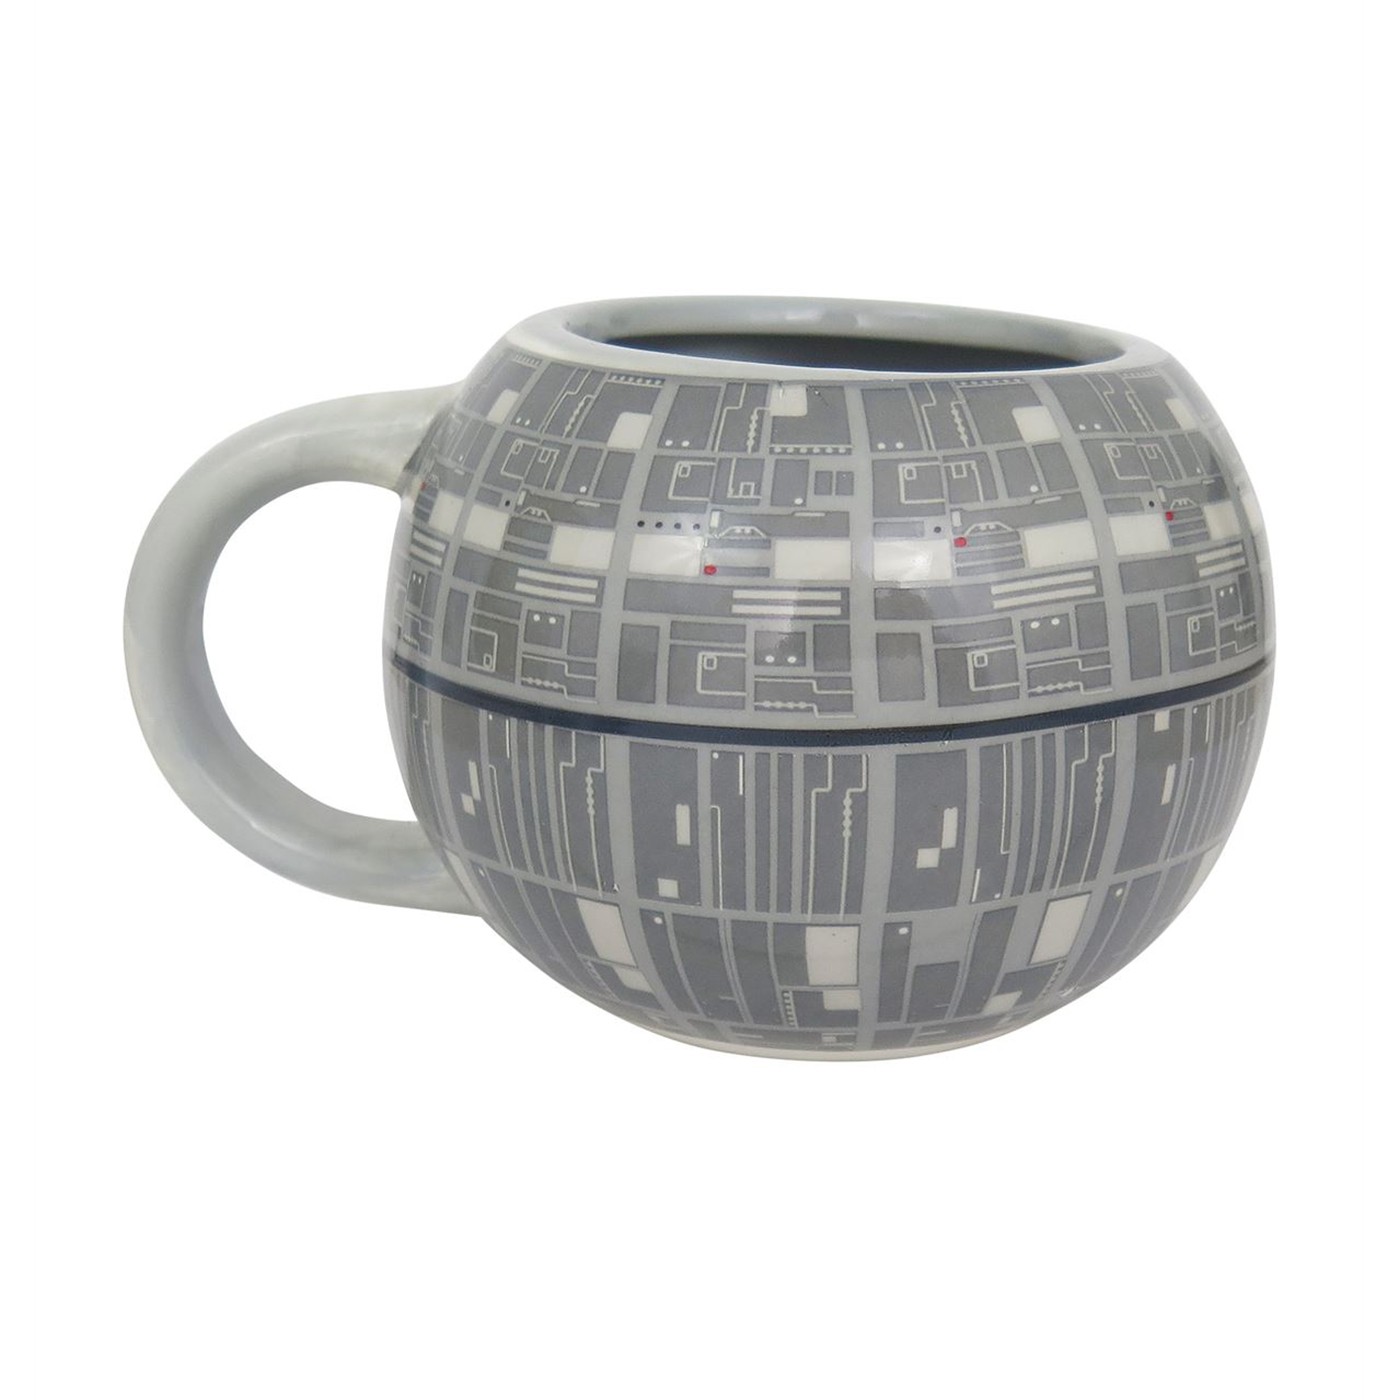 https://www.karinsflorist.com/wp-content/uploads/2020/04/Star-Wars-Death-Star-Bouquet-Mug-1.jpg